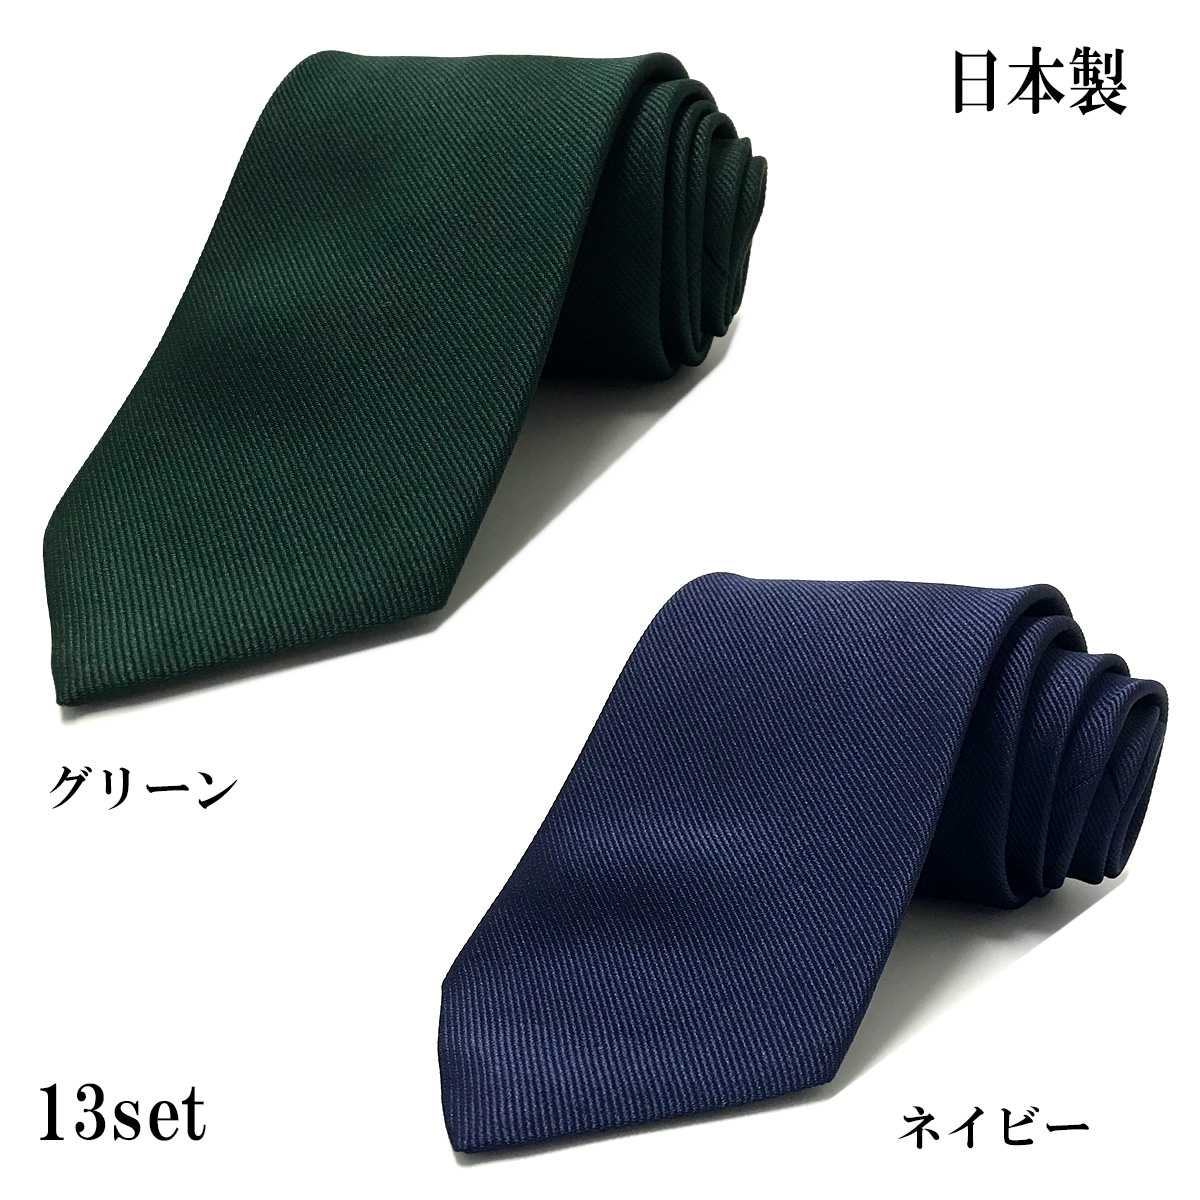 ネクタイ 2本セット 日本製 メンズ おしゃれ レギュラー 成人式 メール便送料無料